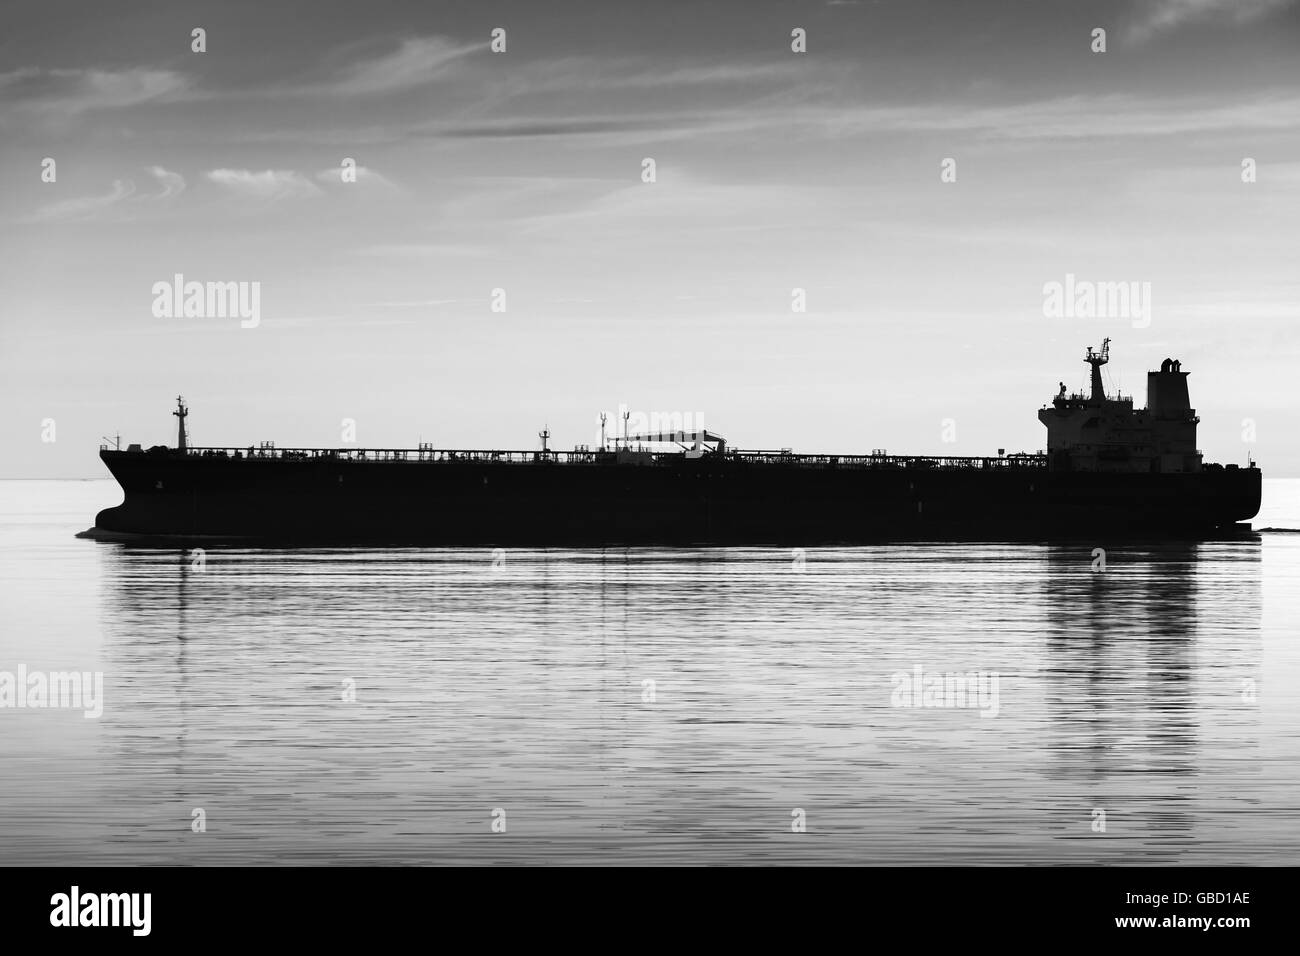 Les grandes industries navire-citerne va encore sur l'eau de mer, noir et blanc photo silhouette Banque D'Images